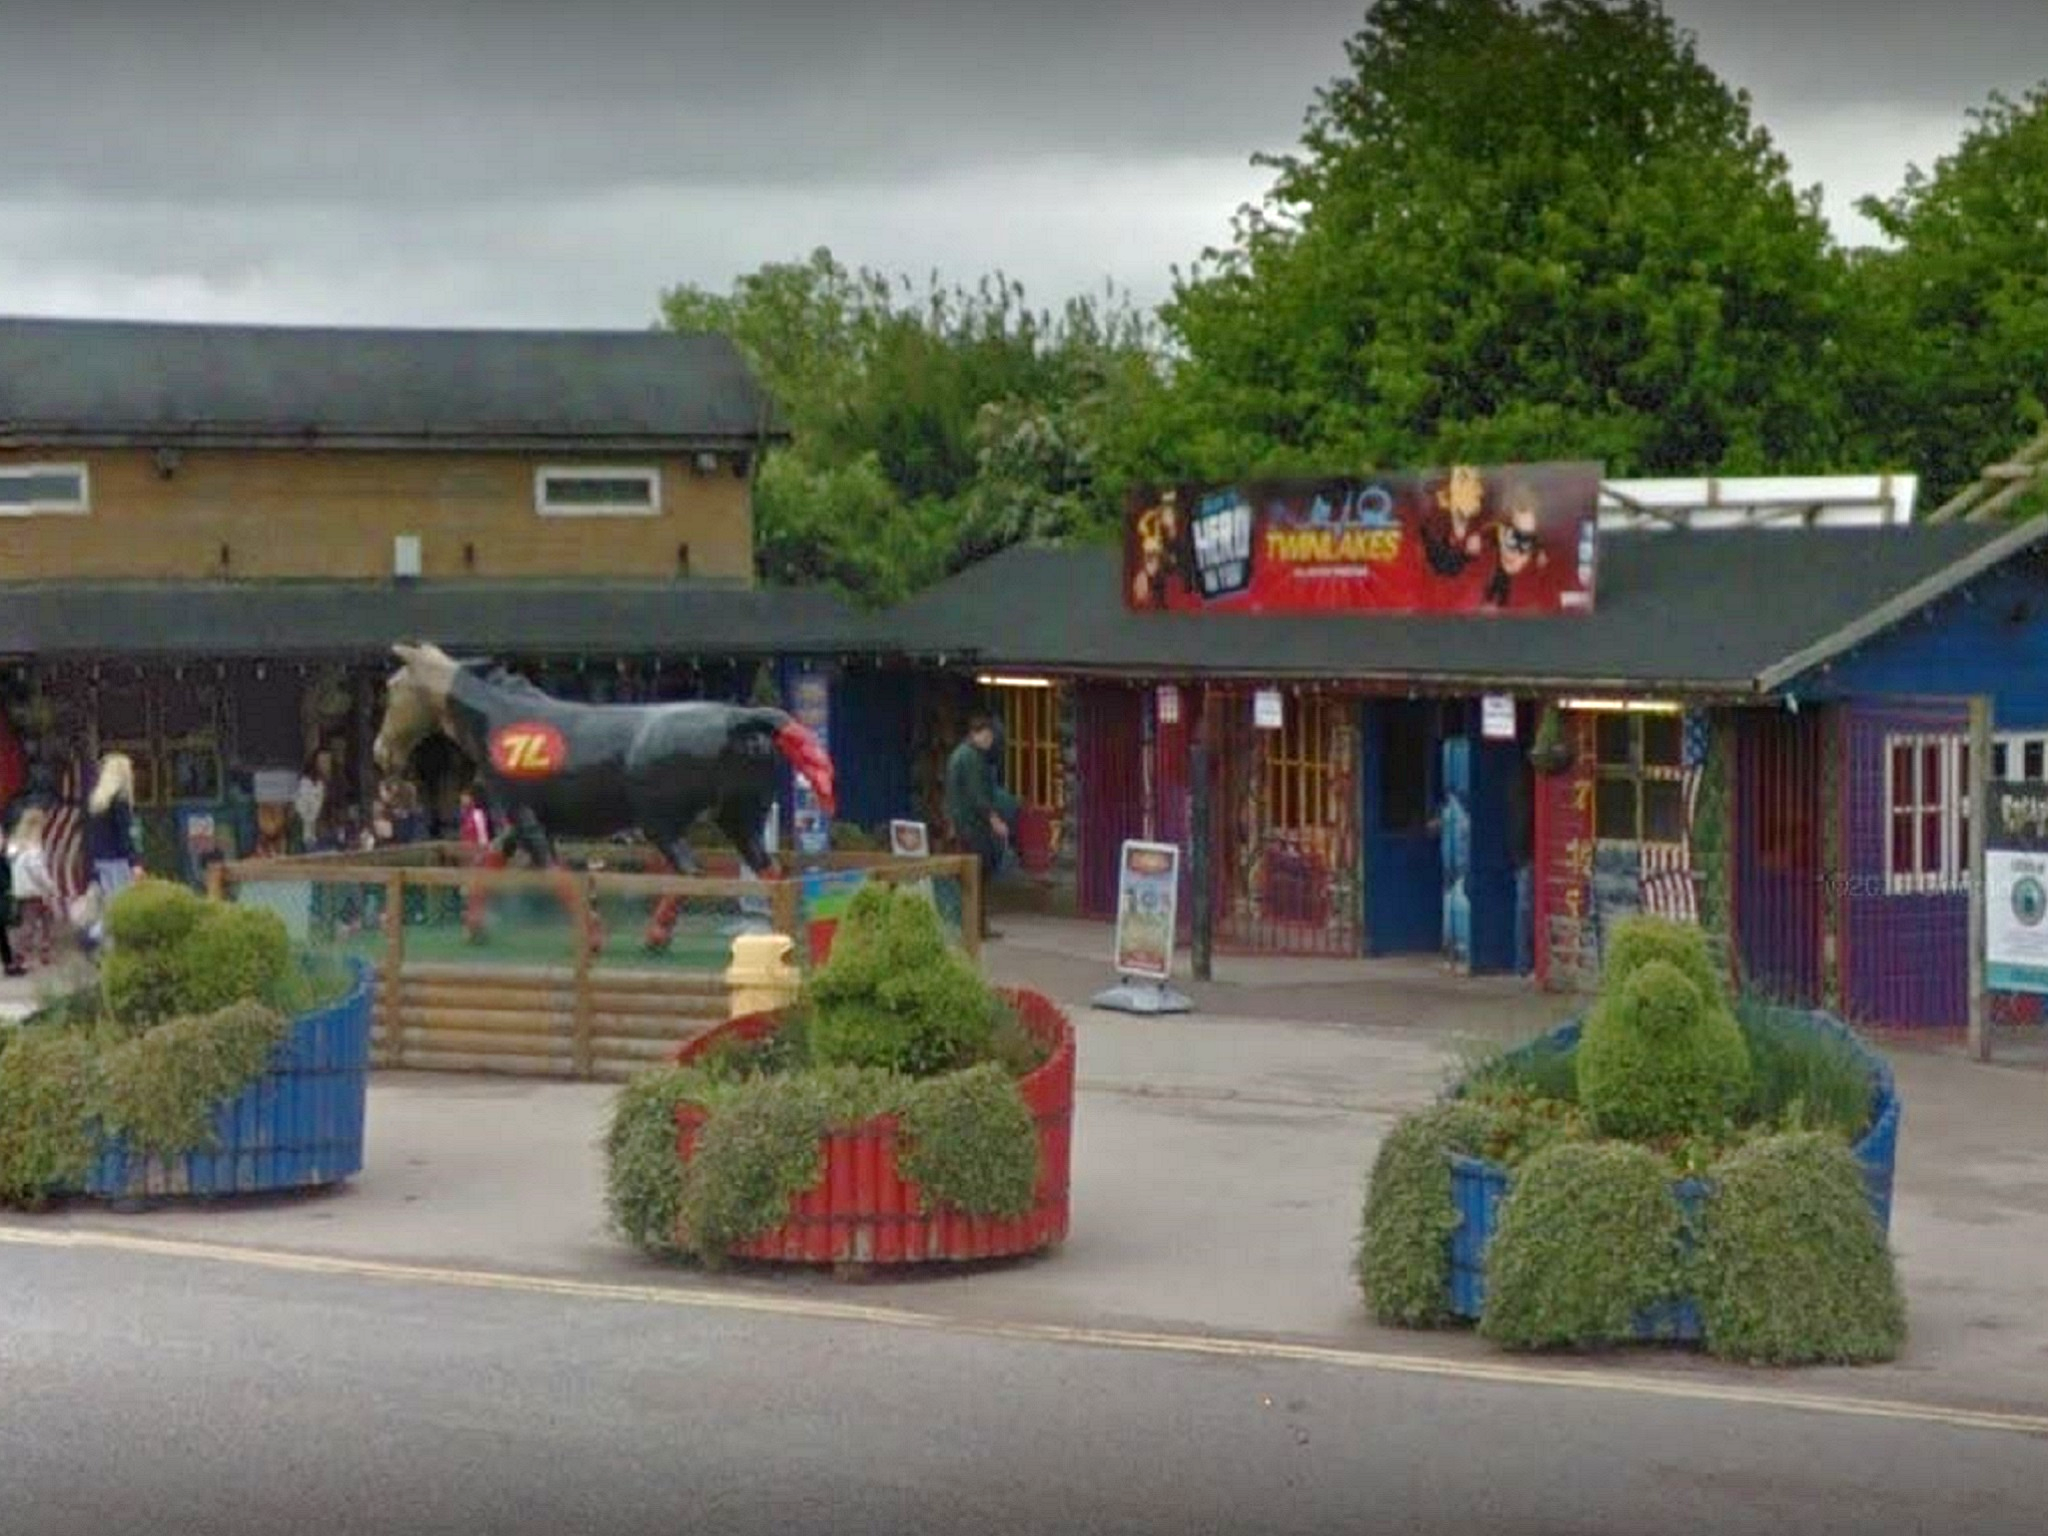 Twinlakes theme park in Melton Mowbray, Leicestershire.